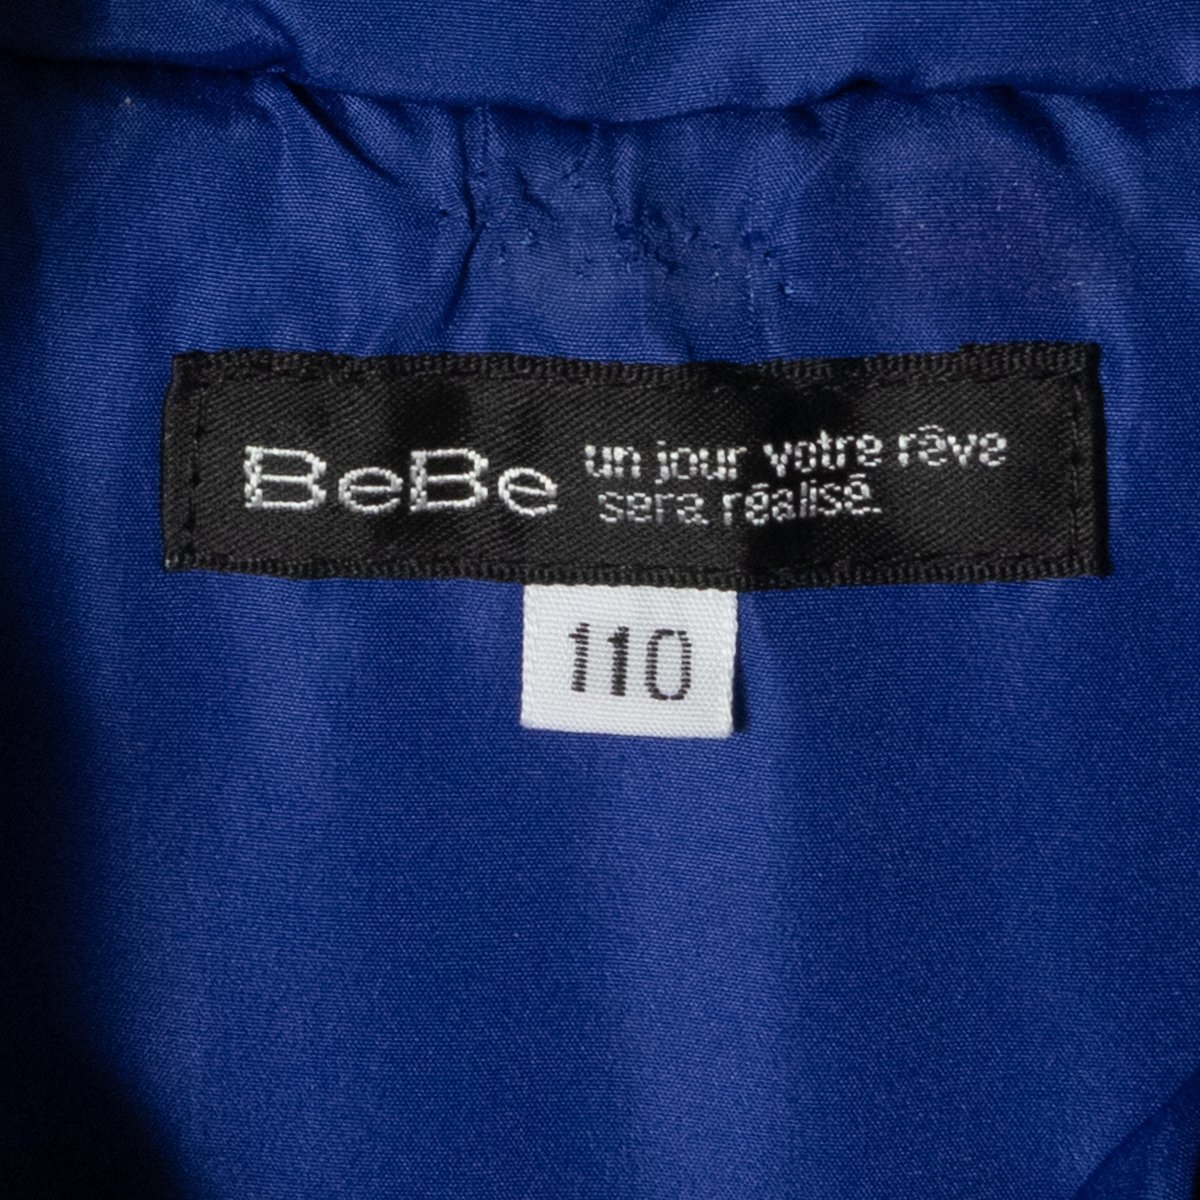 BEBE Bebe Kids ребенок одежда с хлопком жакет 110 синий blue рукав ребра вышивка Logo внешний легкий . способ простой casual капот нет 